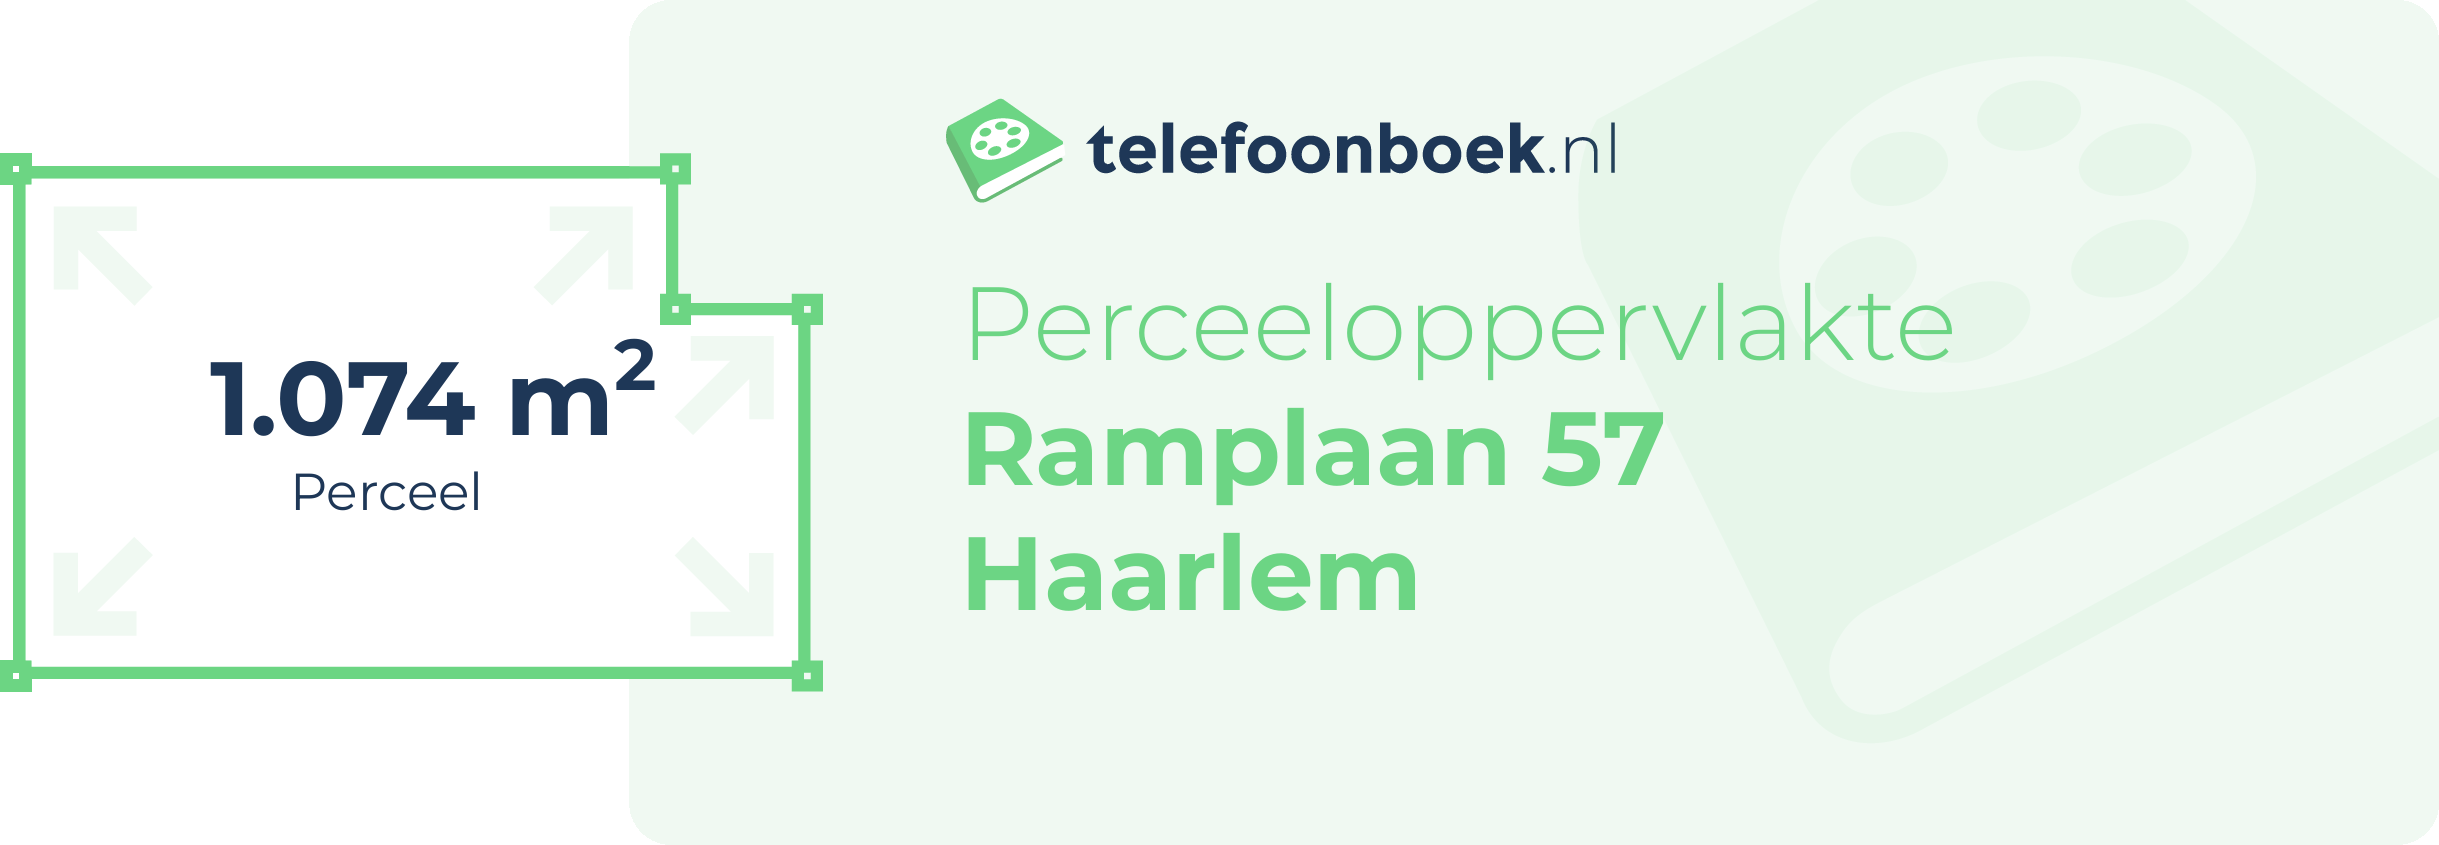 Perceeloppervlakte Ramplaan 57 Haarlem